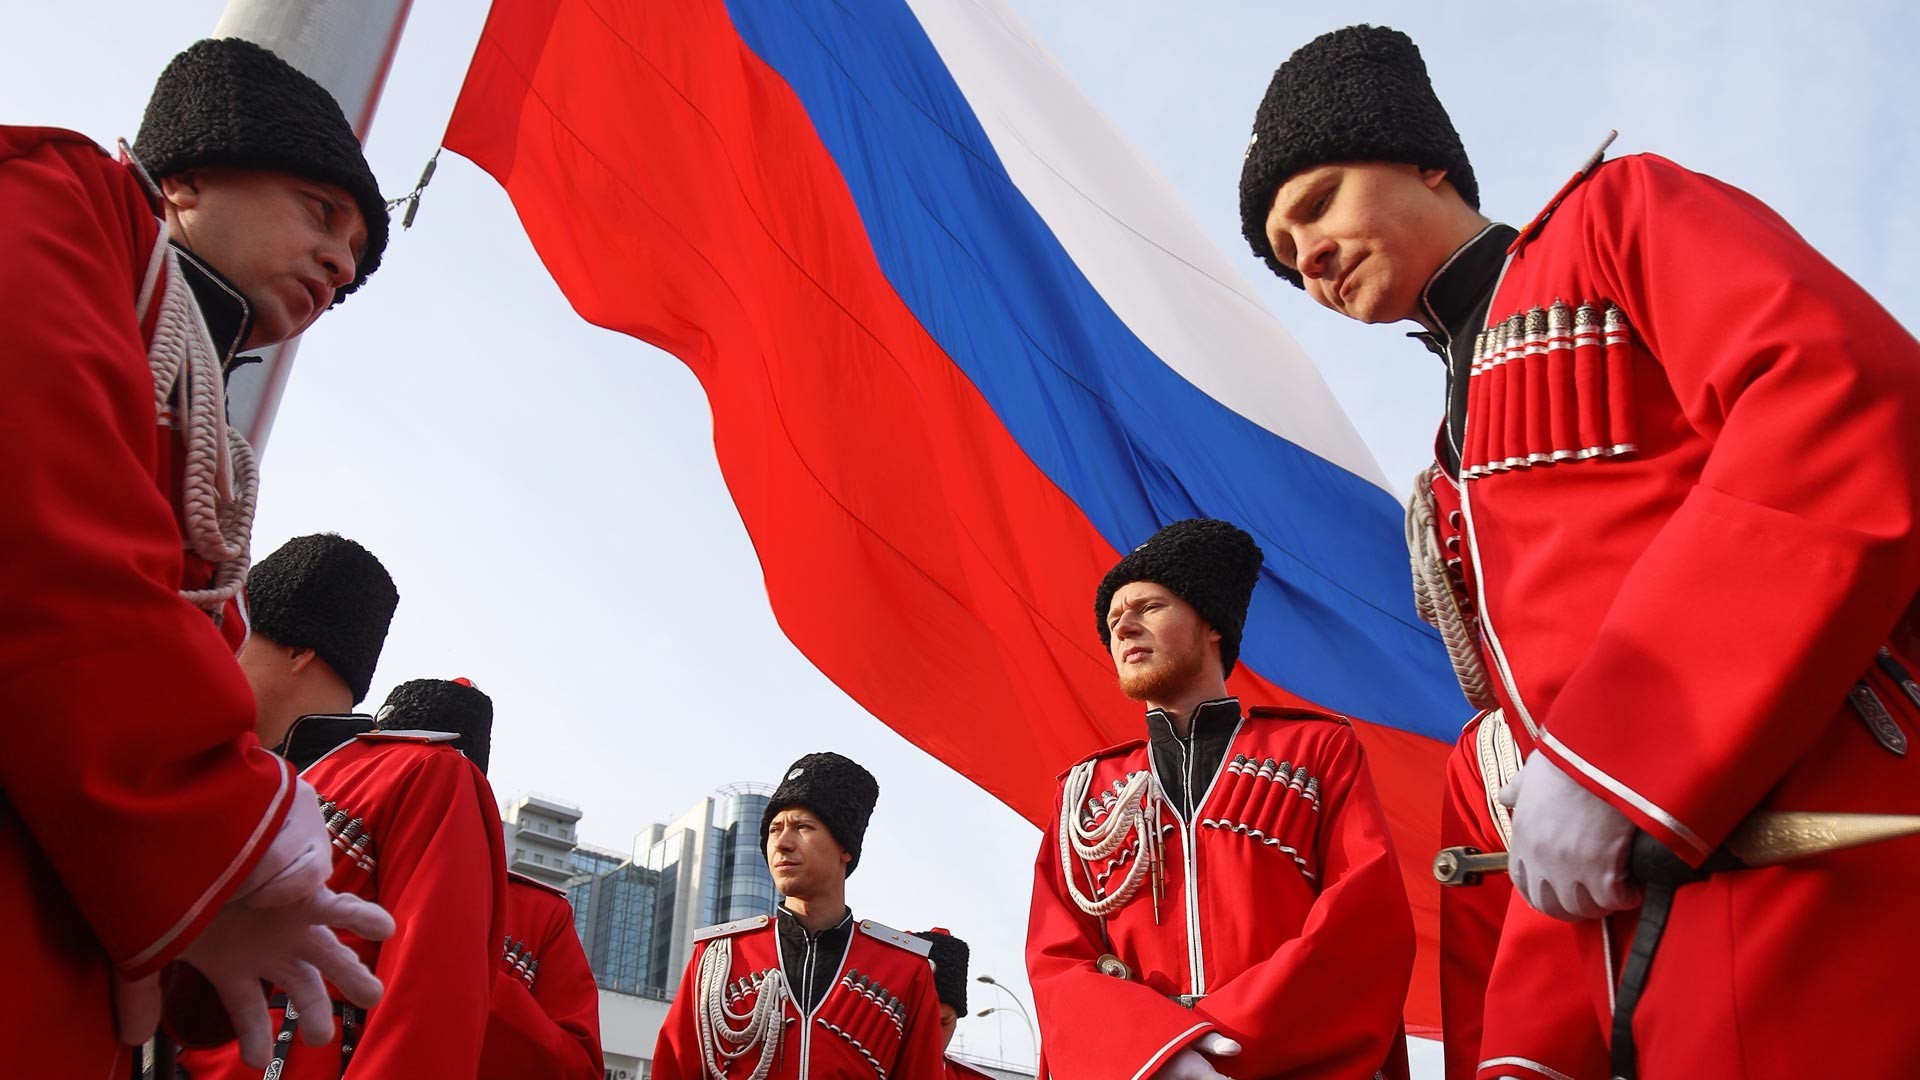 Cérémonie solennelle de levée du drapeau de la Russie par les membres de la Société cosaque militaire du Kouban le Jour de l'Unité nationale sur la place principale de la ville de Krasnodar